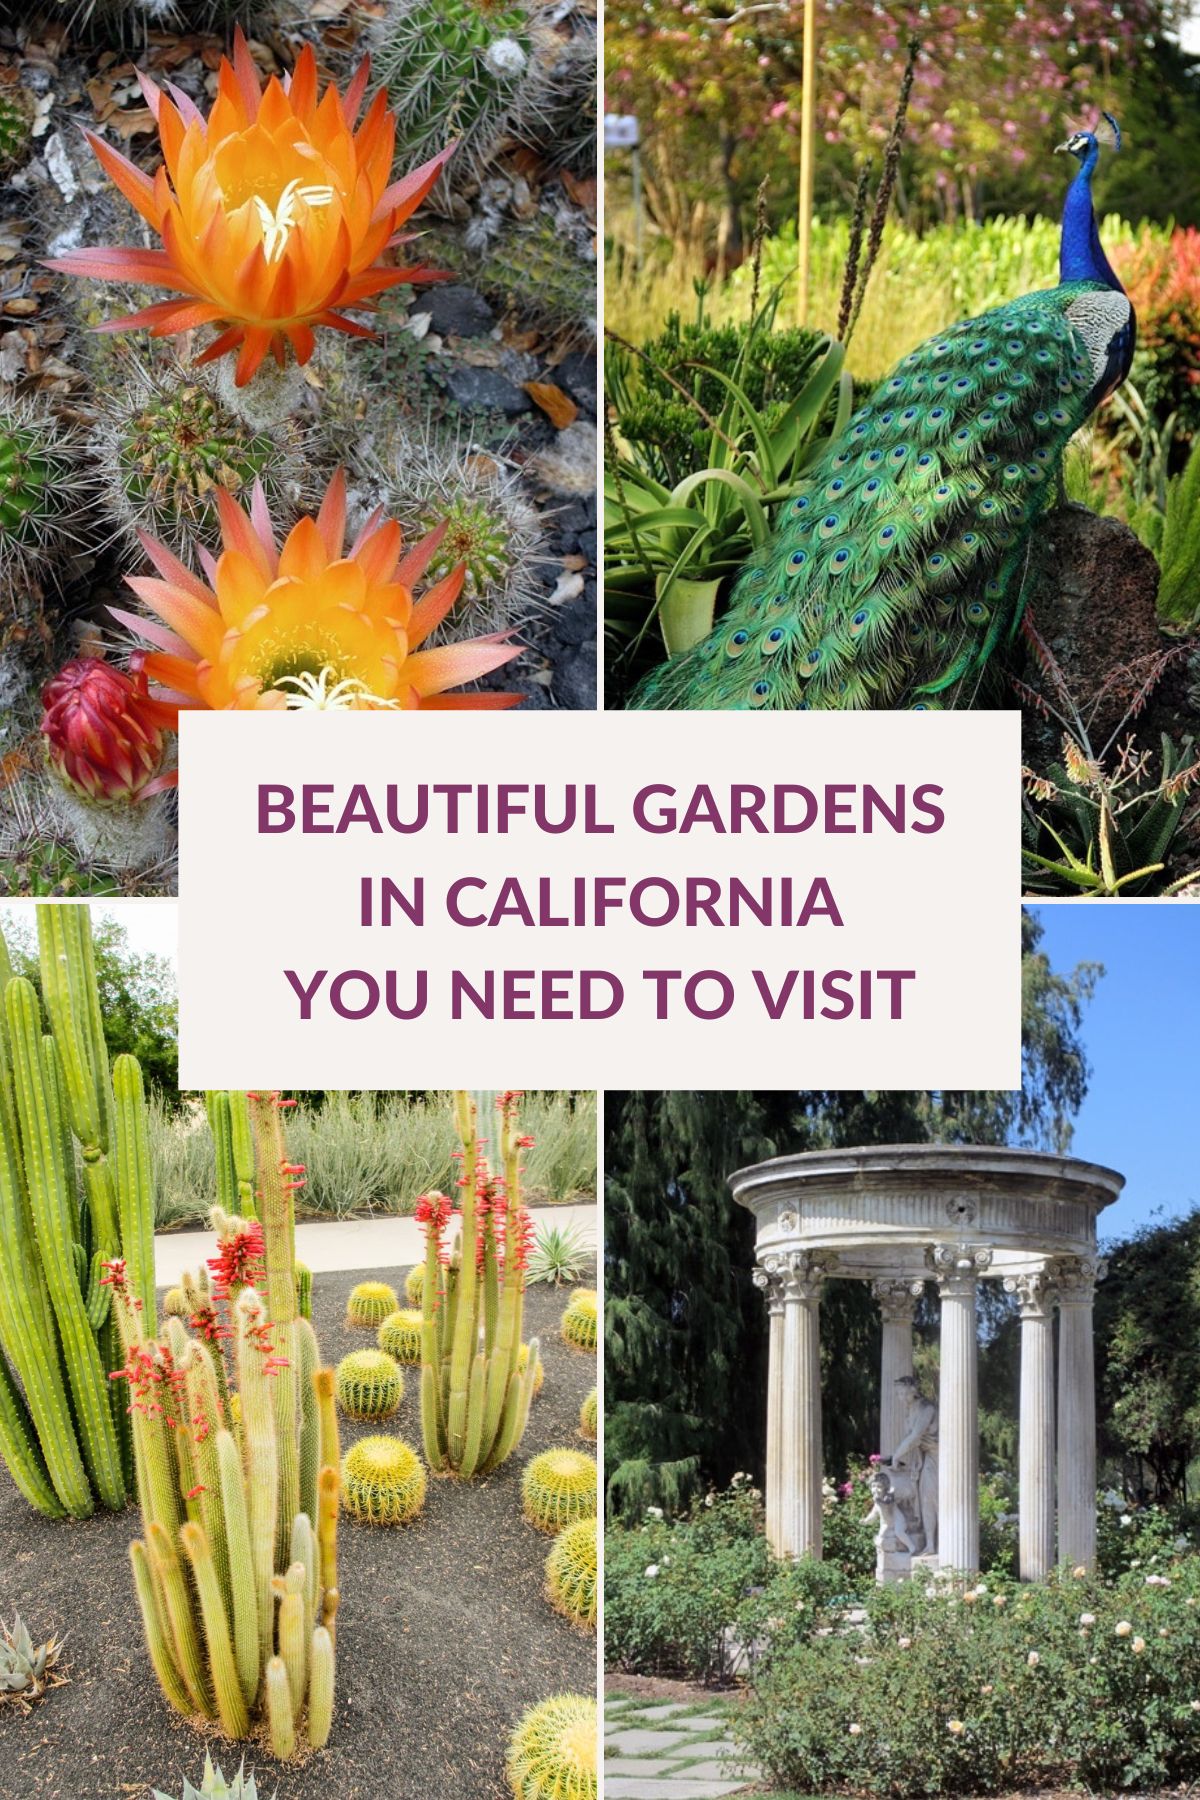  22 kaunista puutarhaa Kaliforniassa, joita rakastat